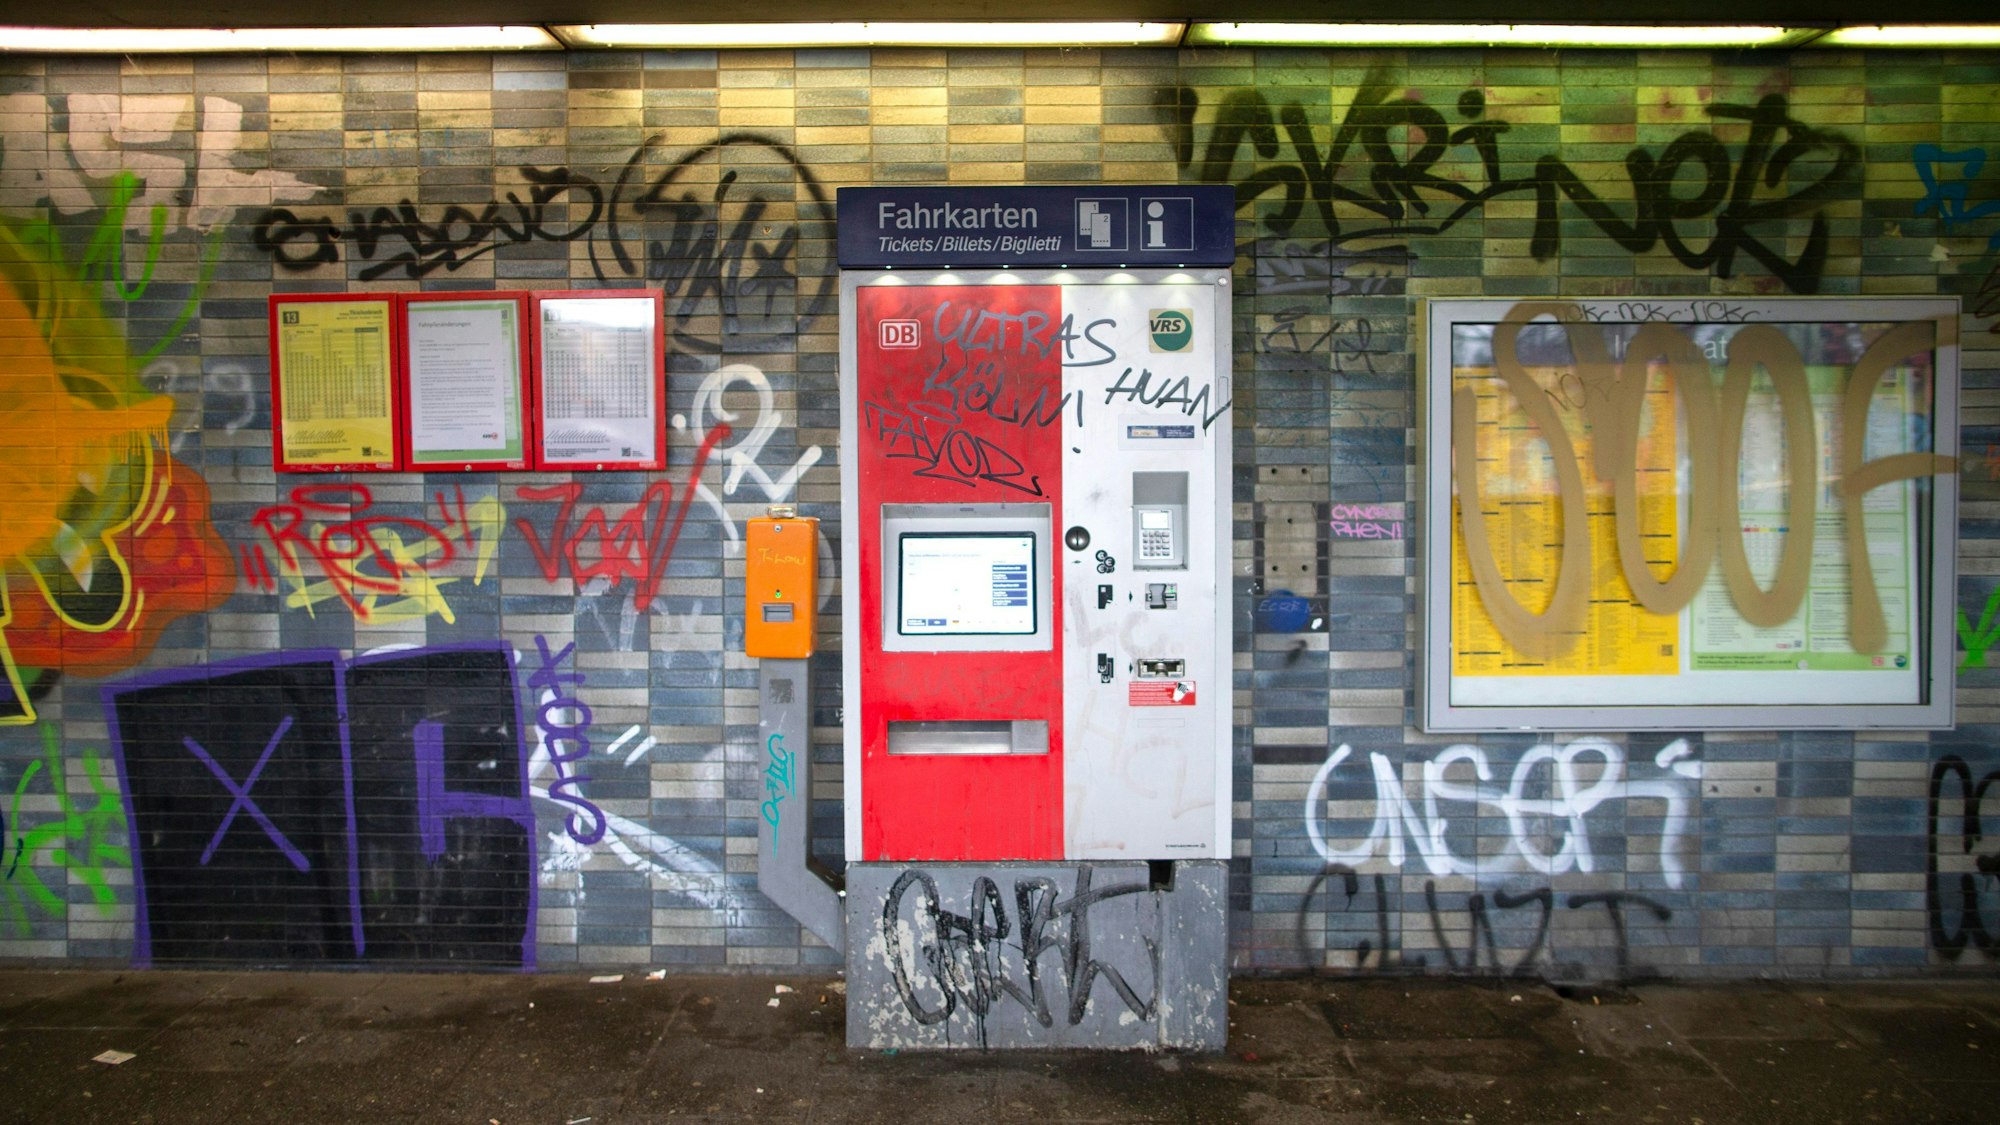 Eine gekachelte Wand in einem Bahnhof sowie ein Fahrkartenautomat und Fahrplanaushänge sind mit Graffiti und Schriftzügen beschmiert.